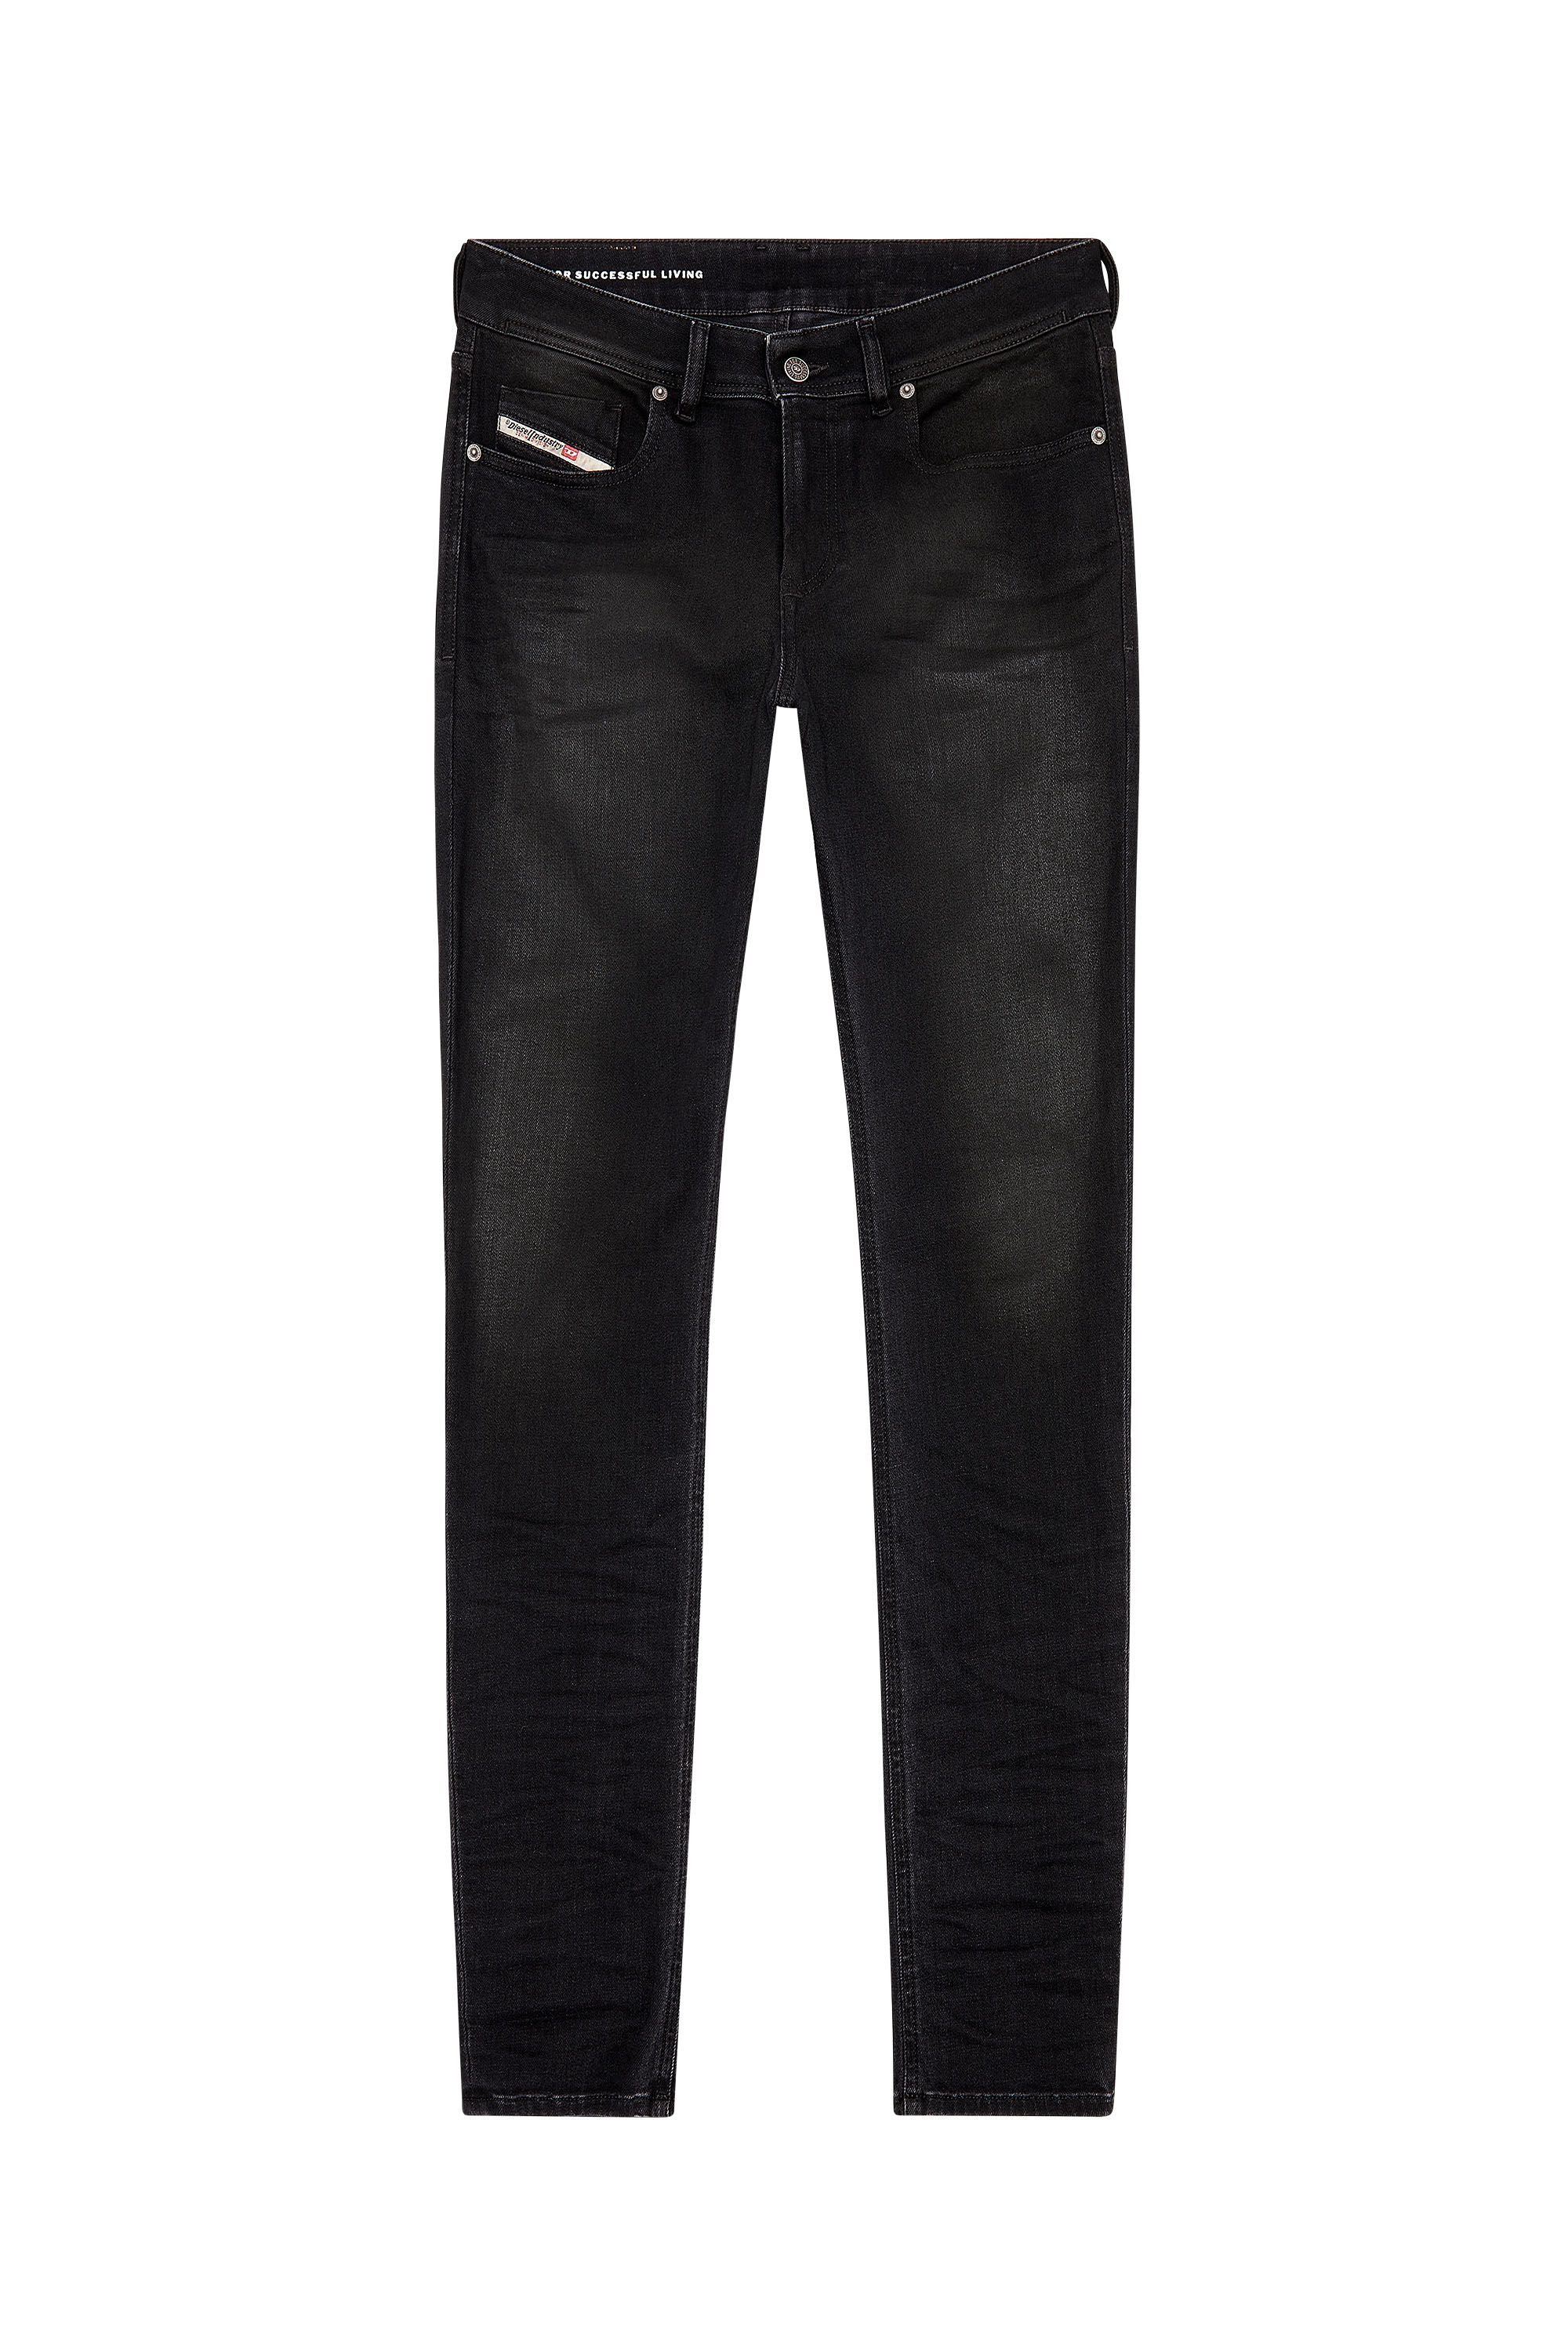 Diesel - Man Skinny Jeans 1979 Sleenker 09H94, Black/Dark grey - Image 5